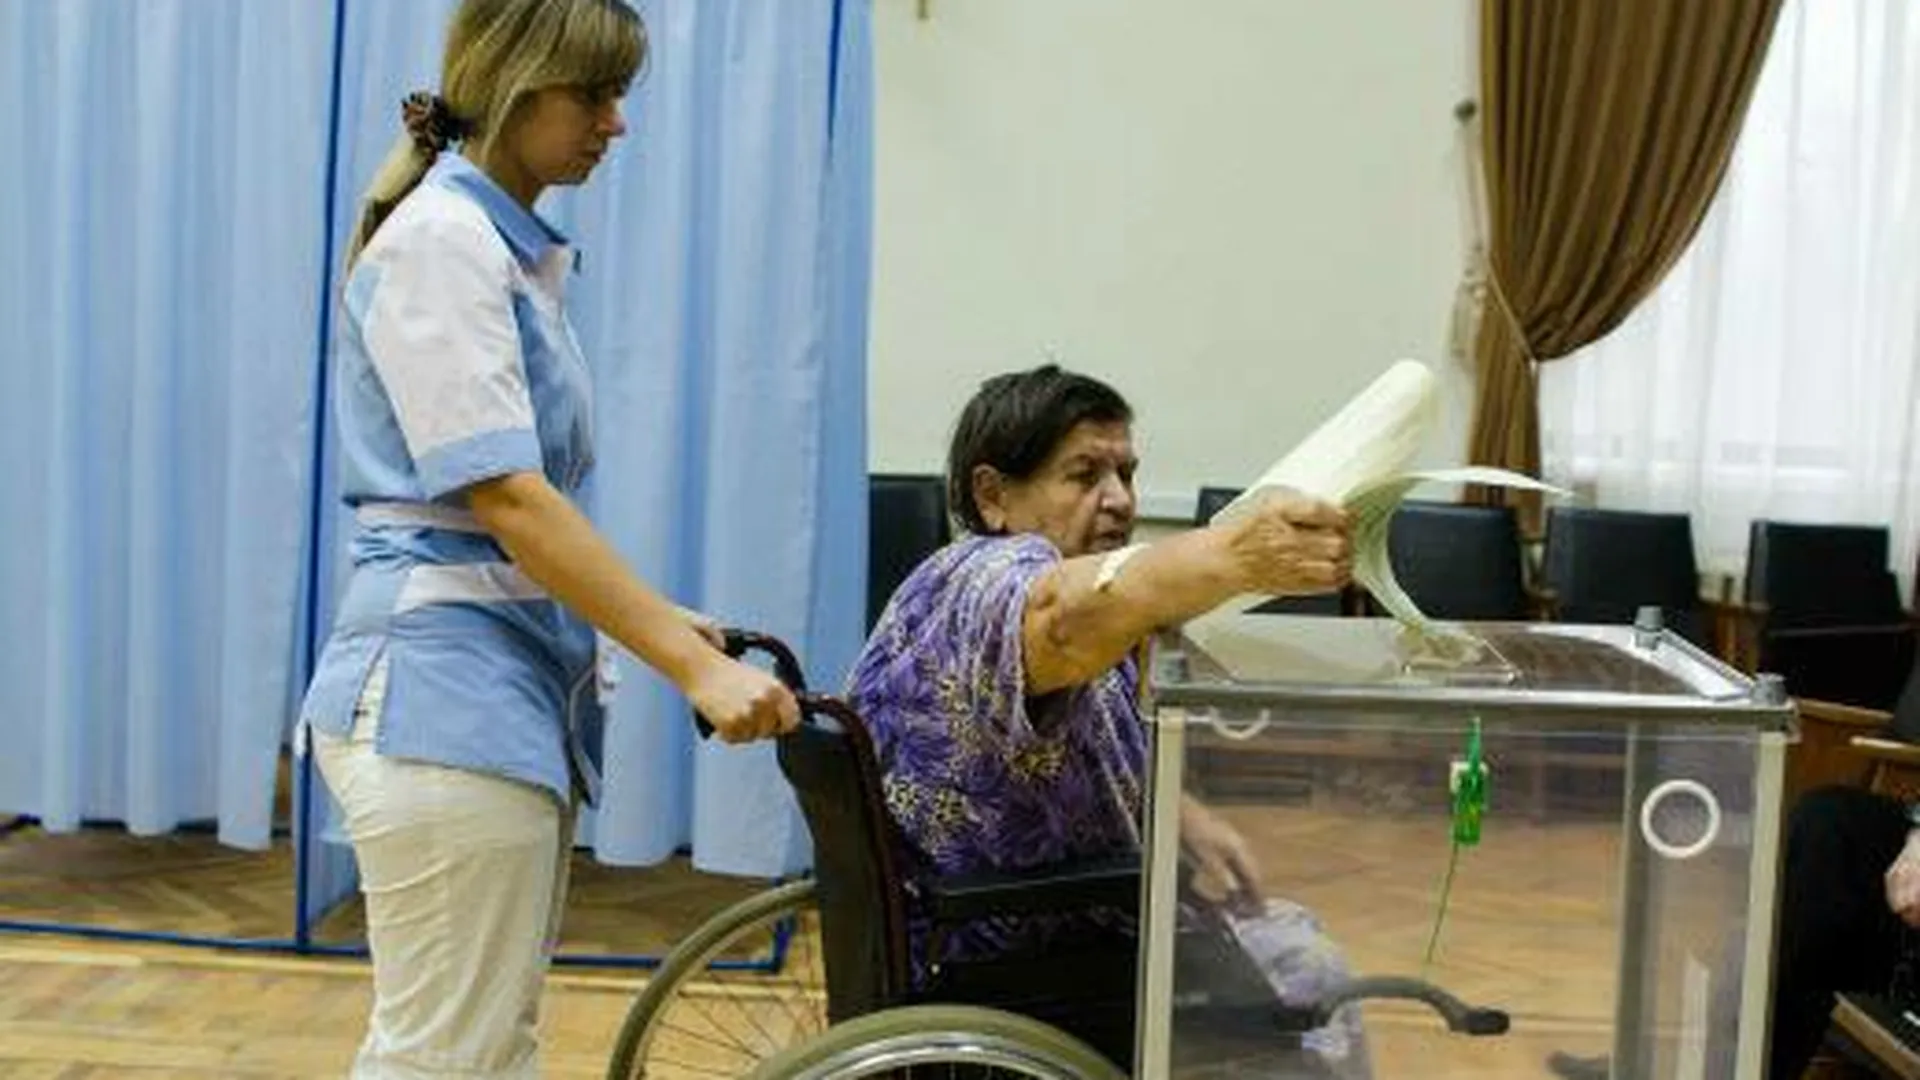 Все избирательные участки в МО к выборам 2016 г оборудуют для инвалидов